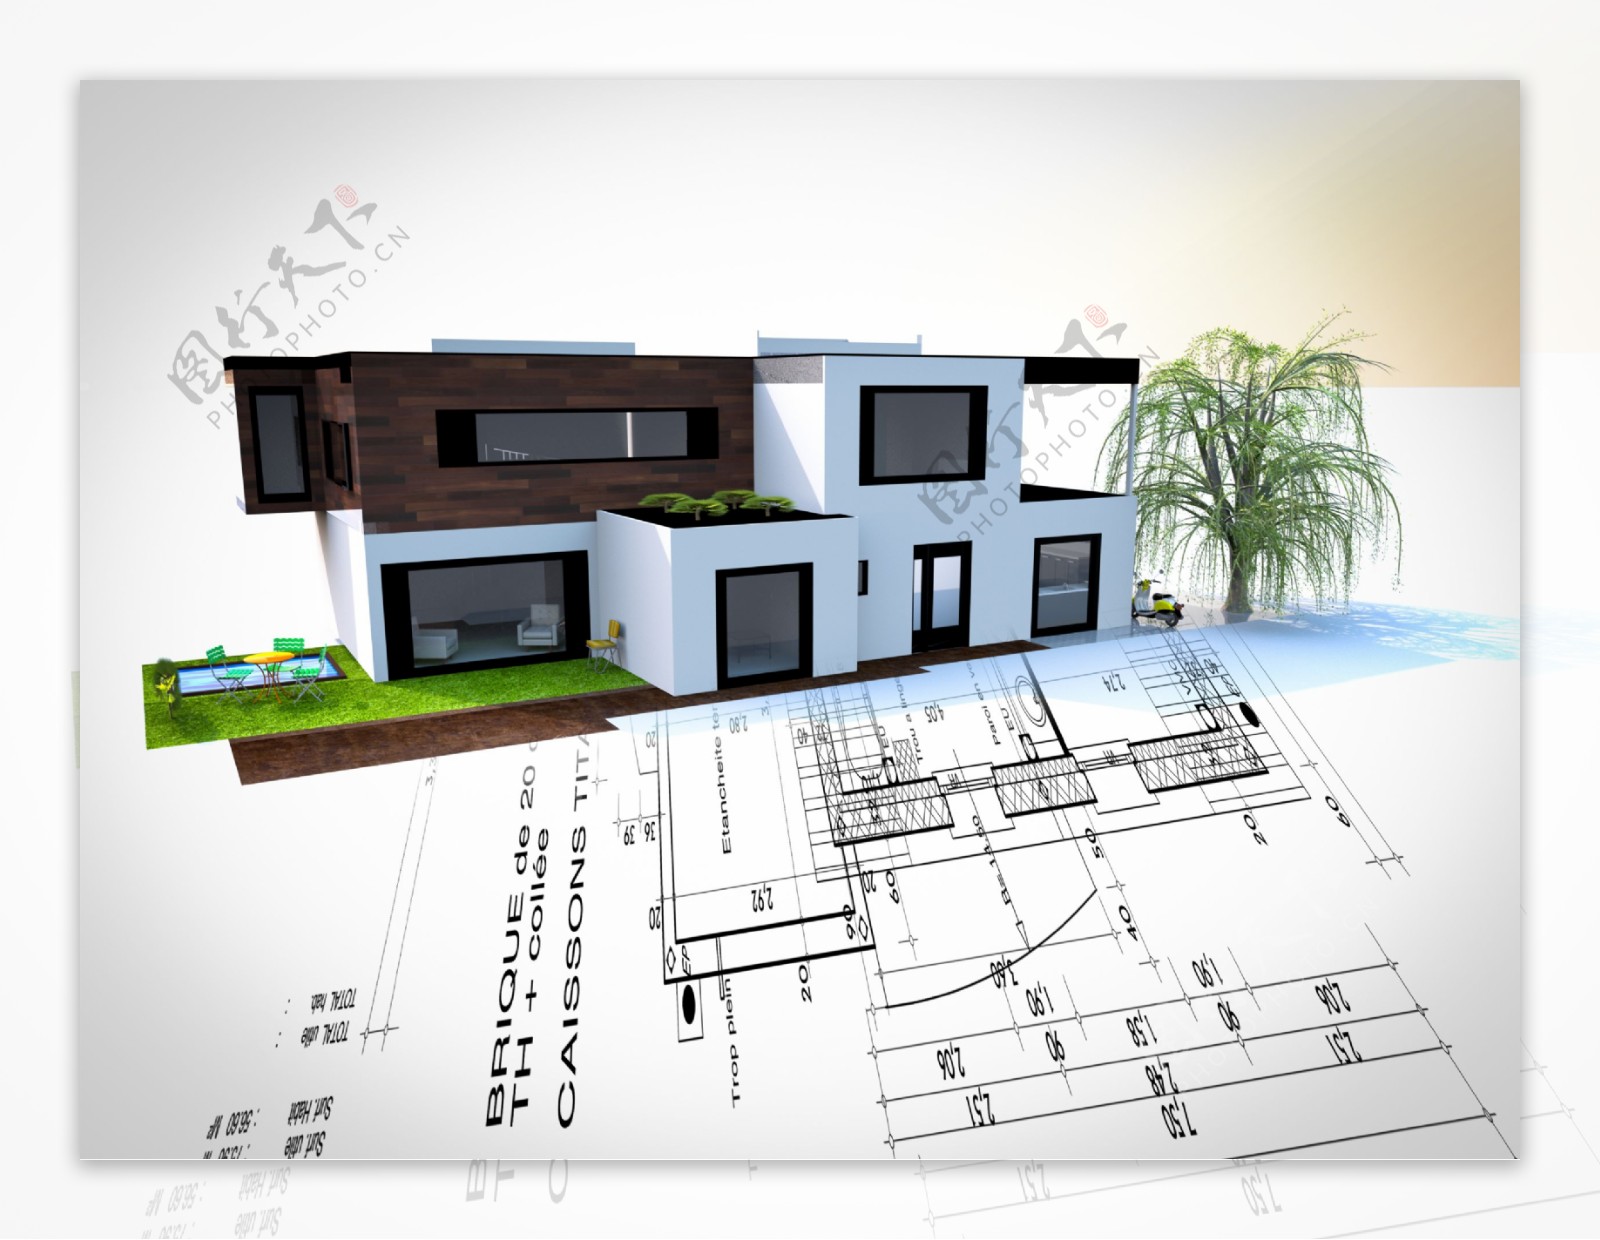 图纸上的房屋建筑模型图片